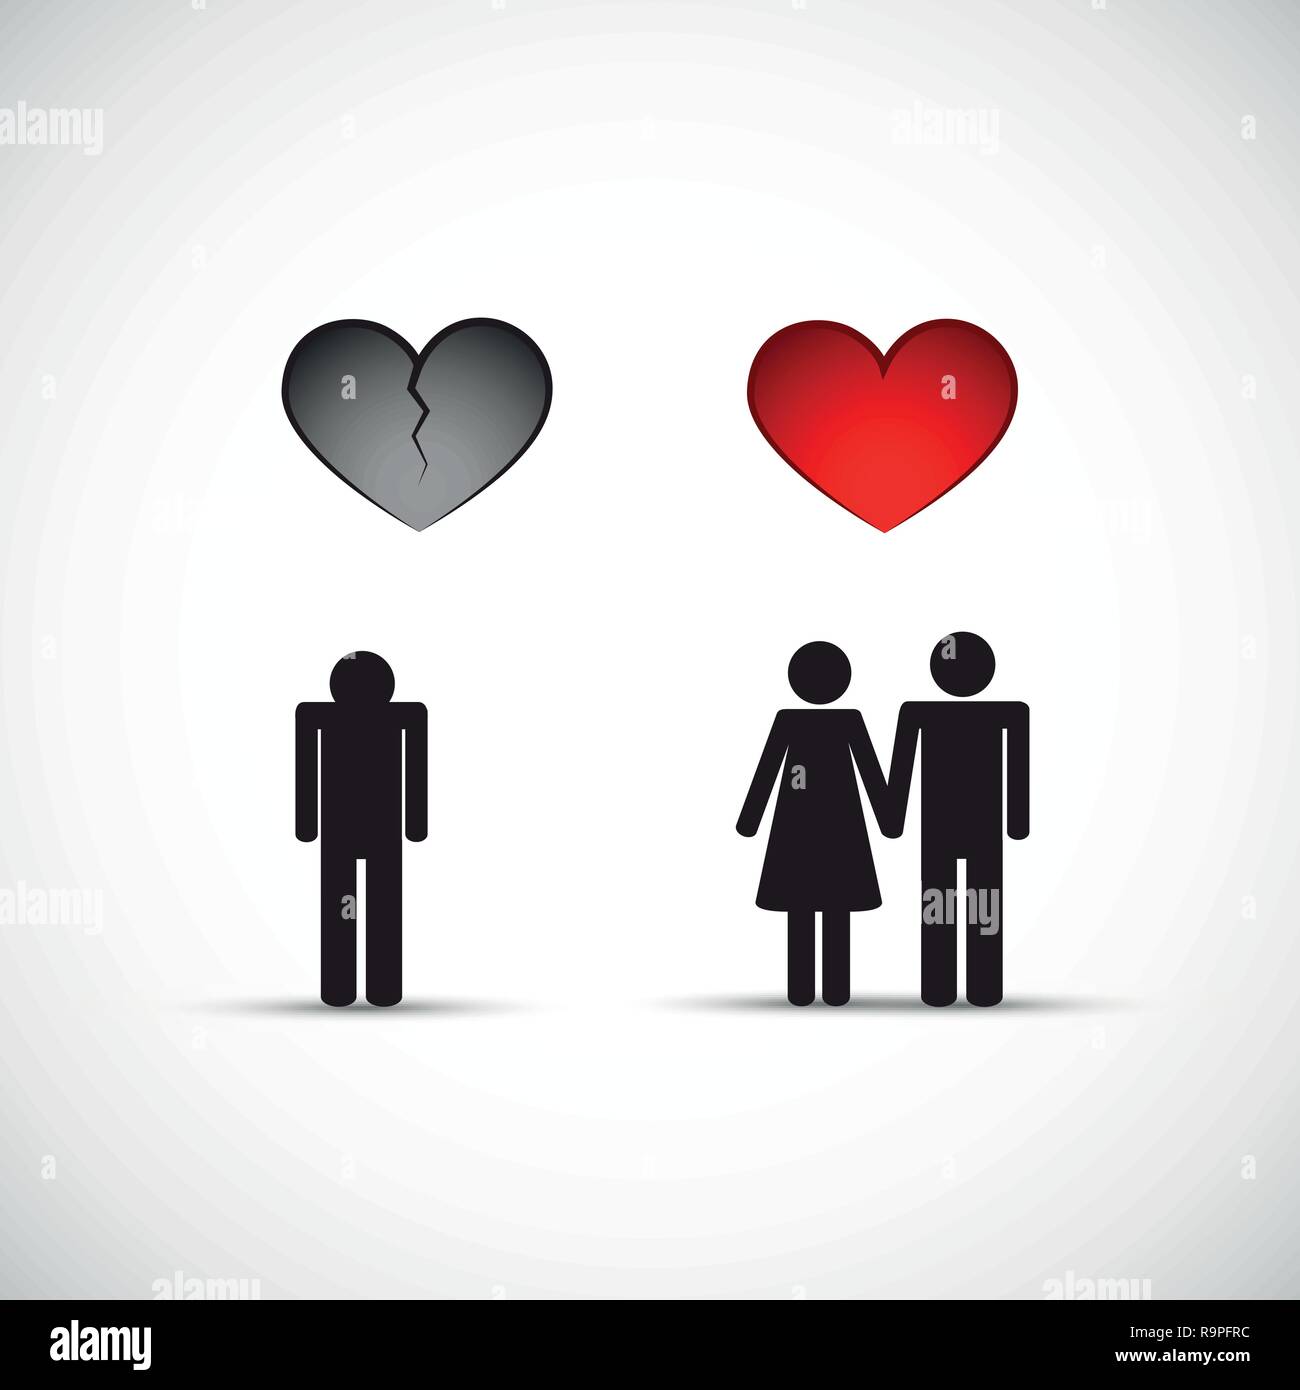 Scheidung und eine neue Beziehung gebrochenes Herz Mann traurig Vektor-illustration EPS 10. Stock Vektor